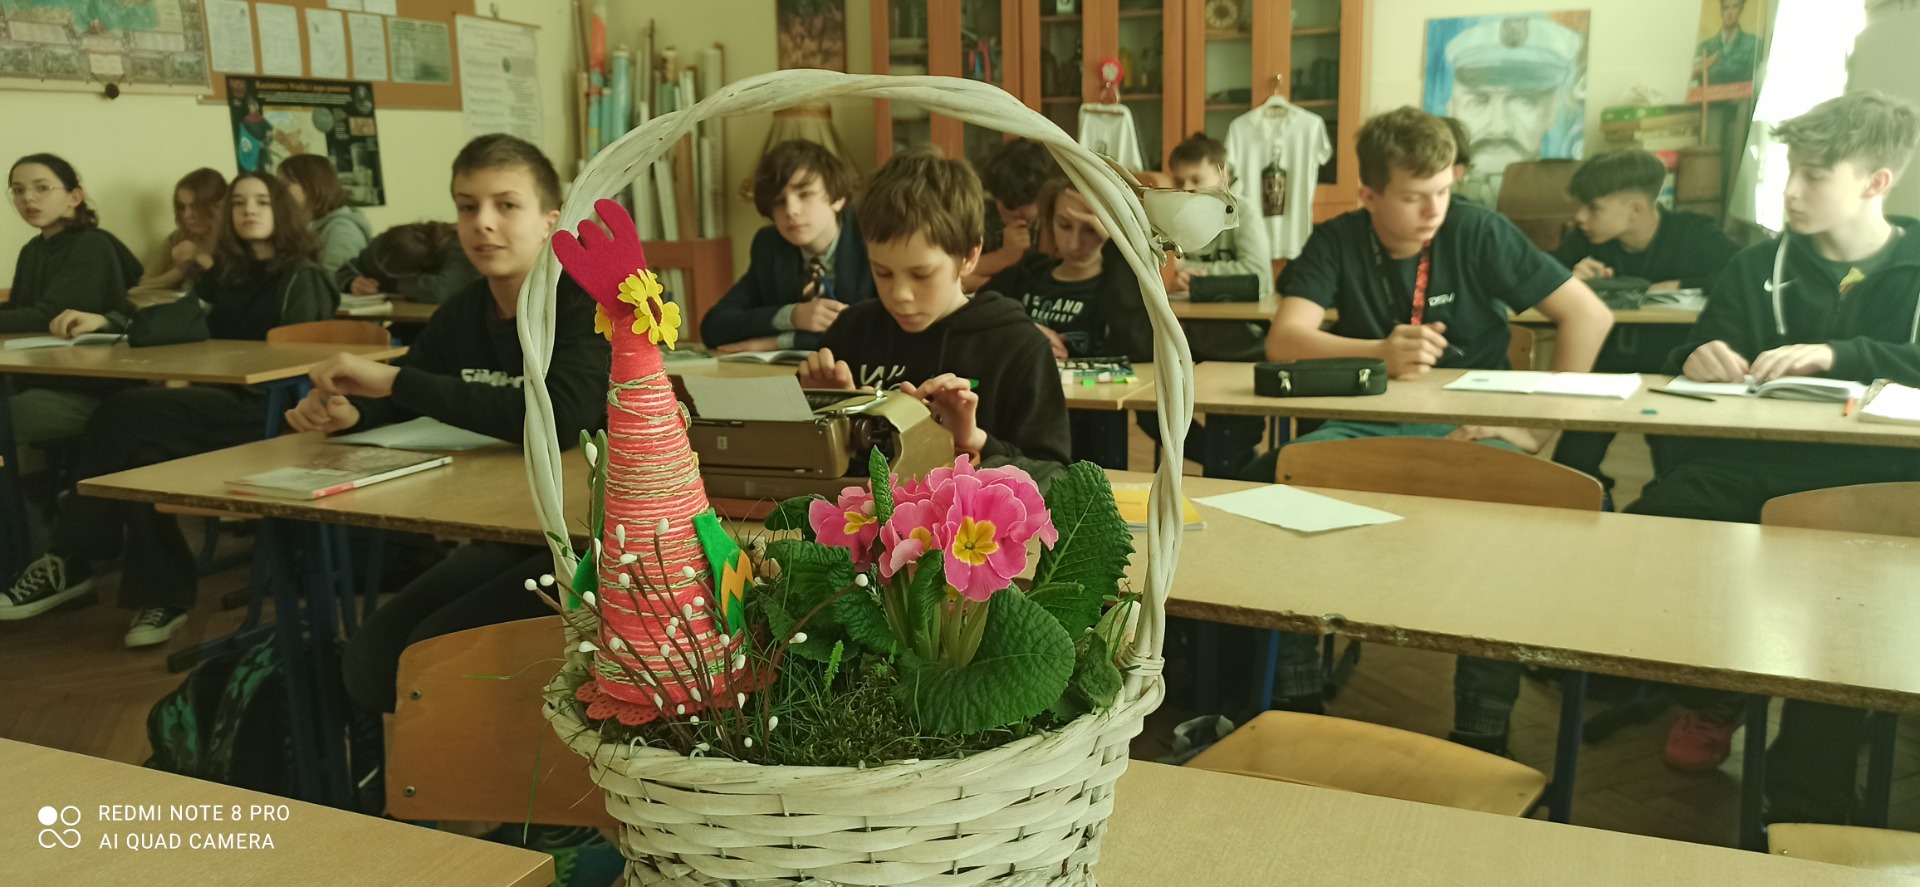 Na pierwszym planie widoczny koszyczek wielkanocny z kwiatkami i papierowym kurczakiem. W tle uczniowie kl. 8a siedzący przy stolikach